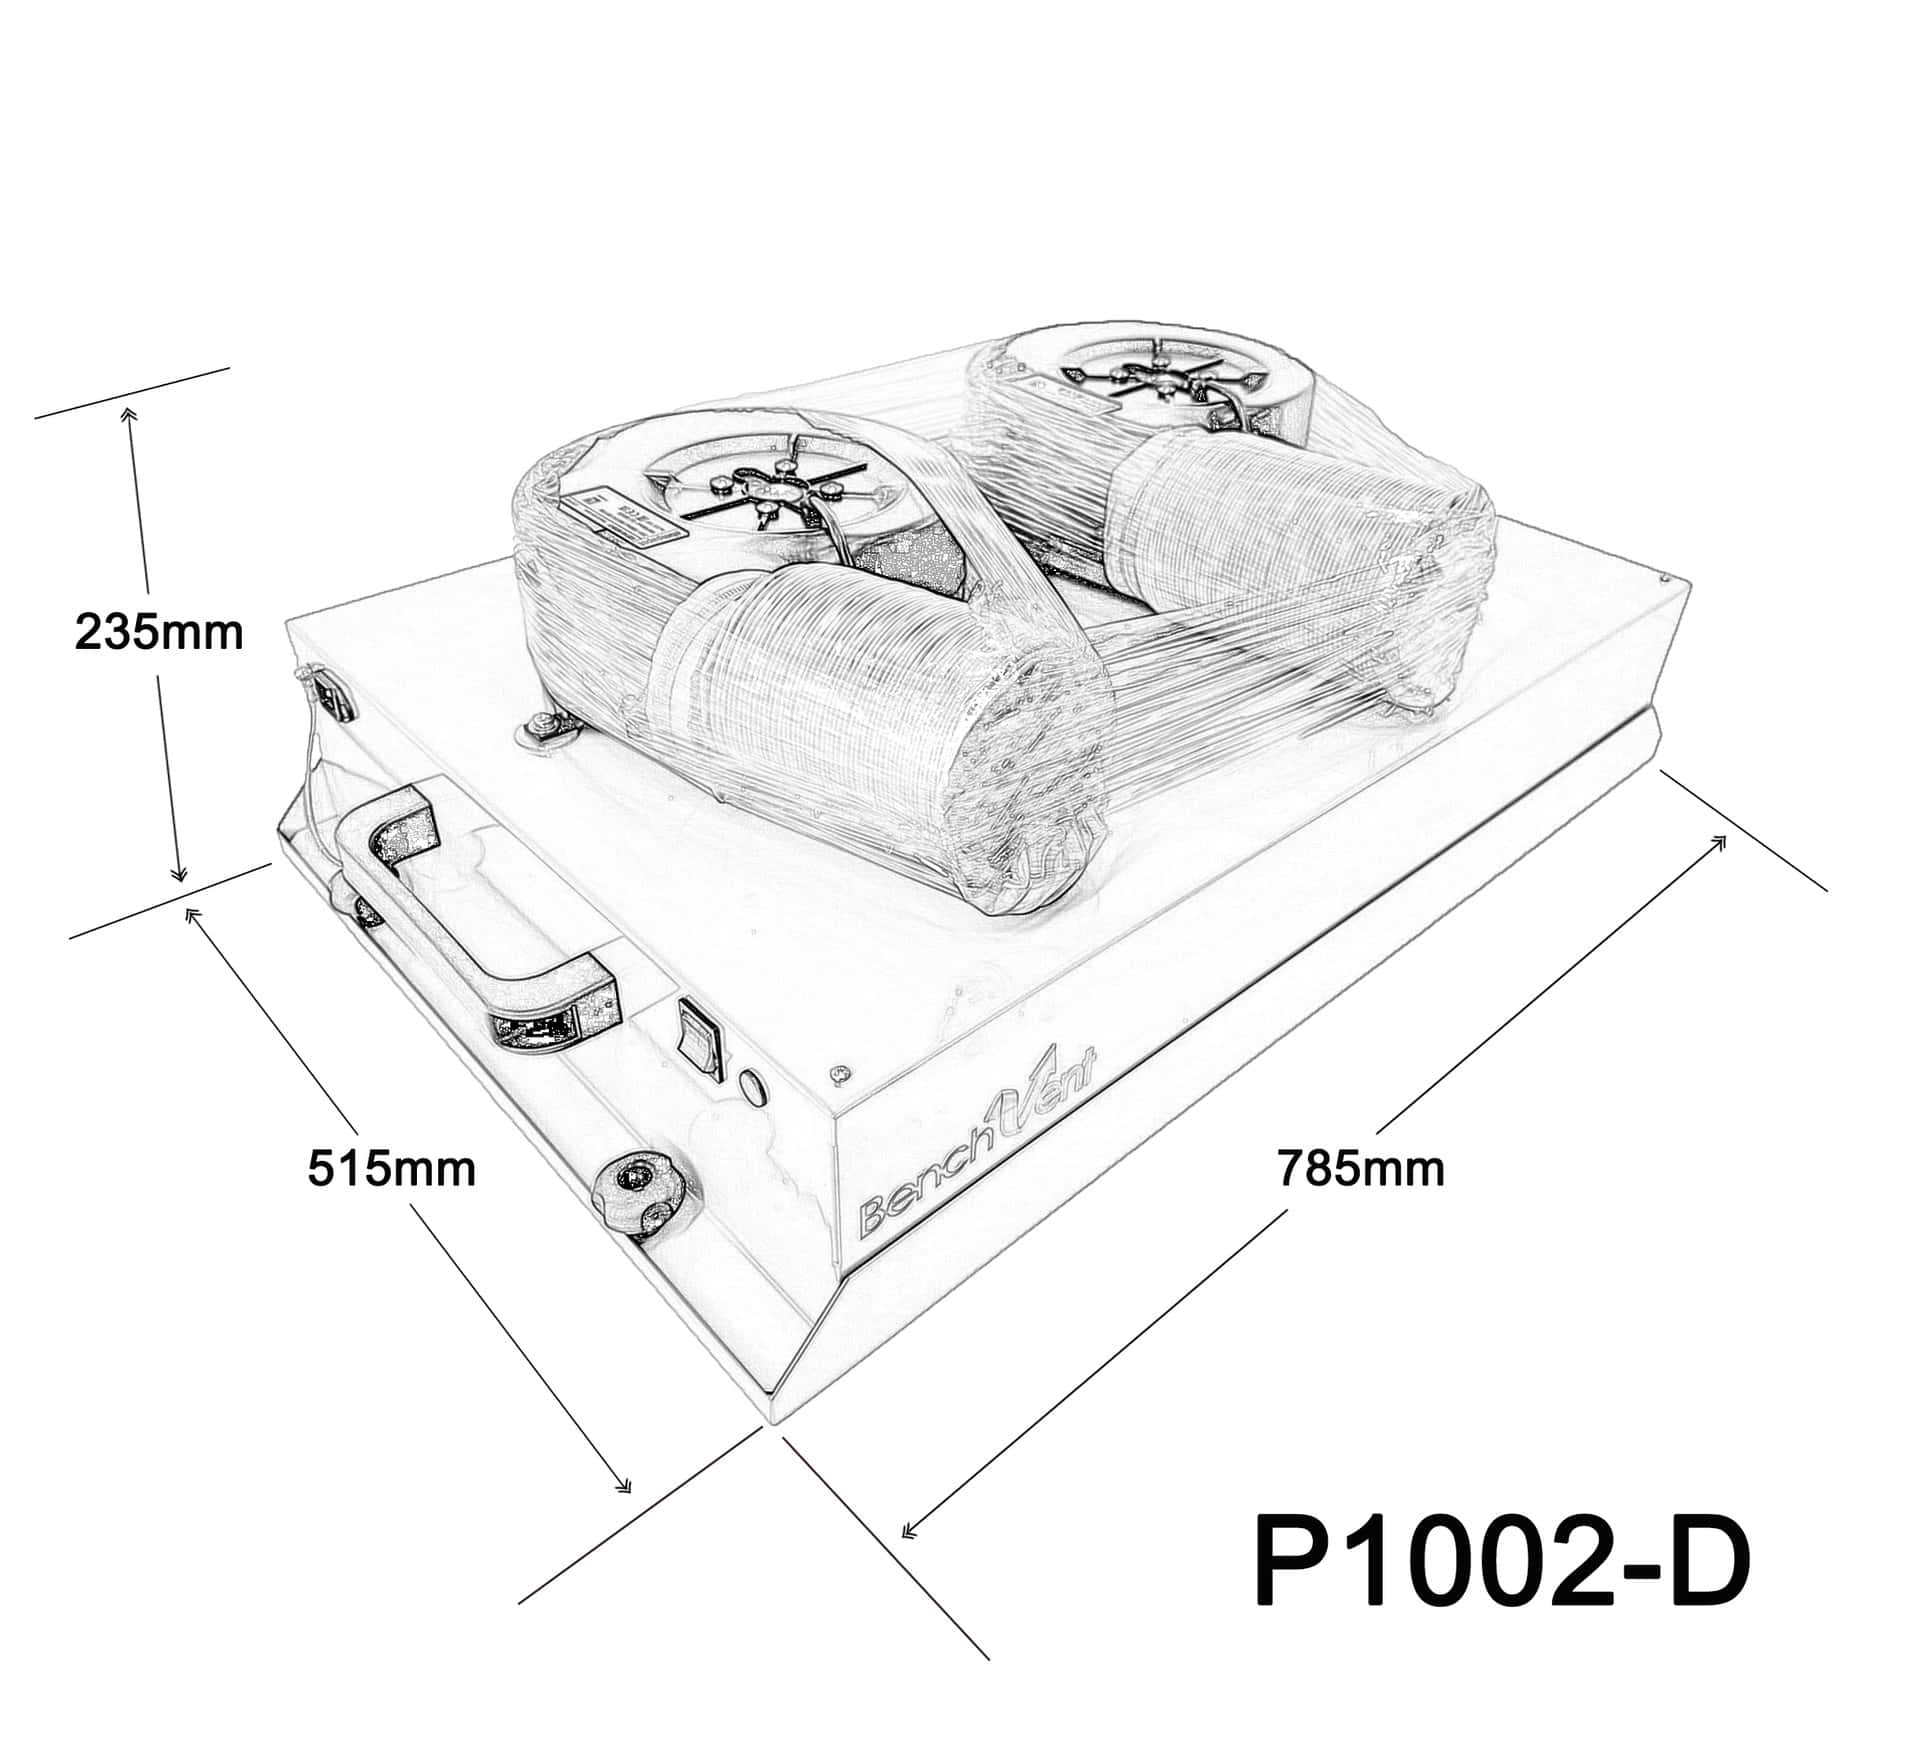 P1002-D FLAT dimensions